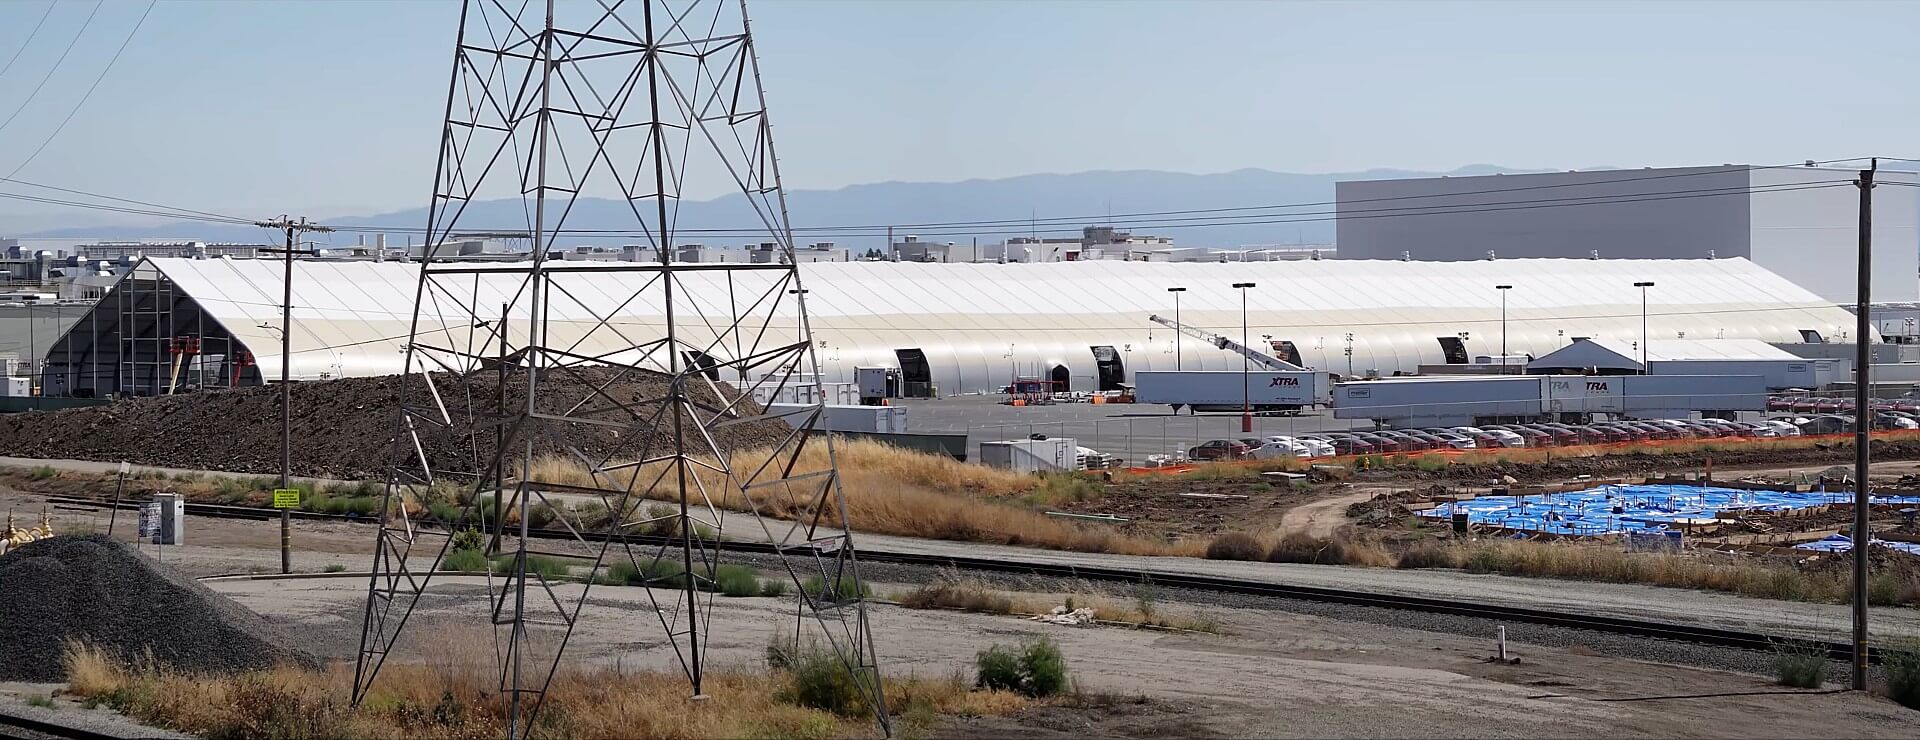 Tesla добавляет еще одну загадочную палатку на завод во Фримонте